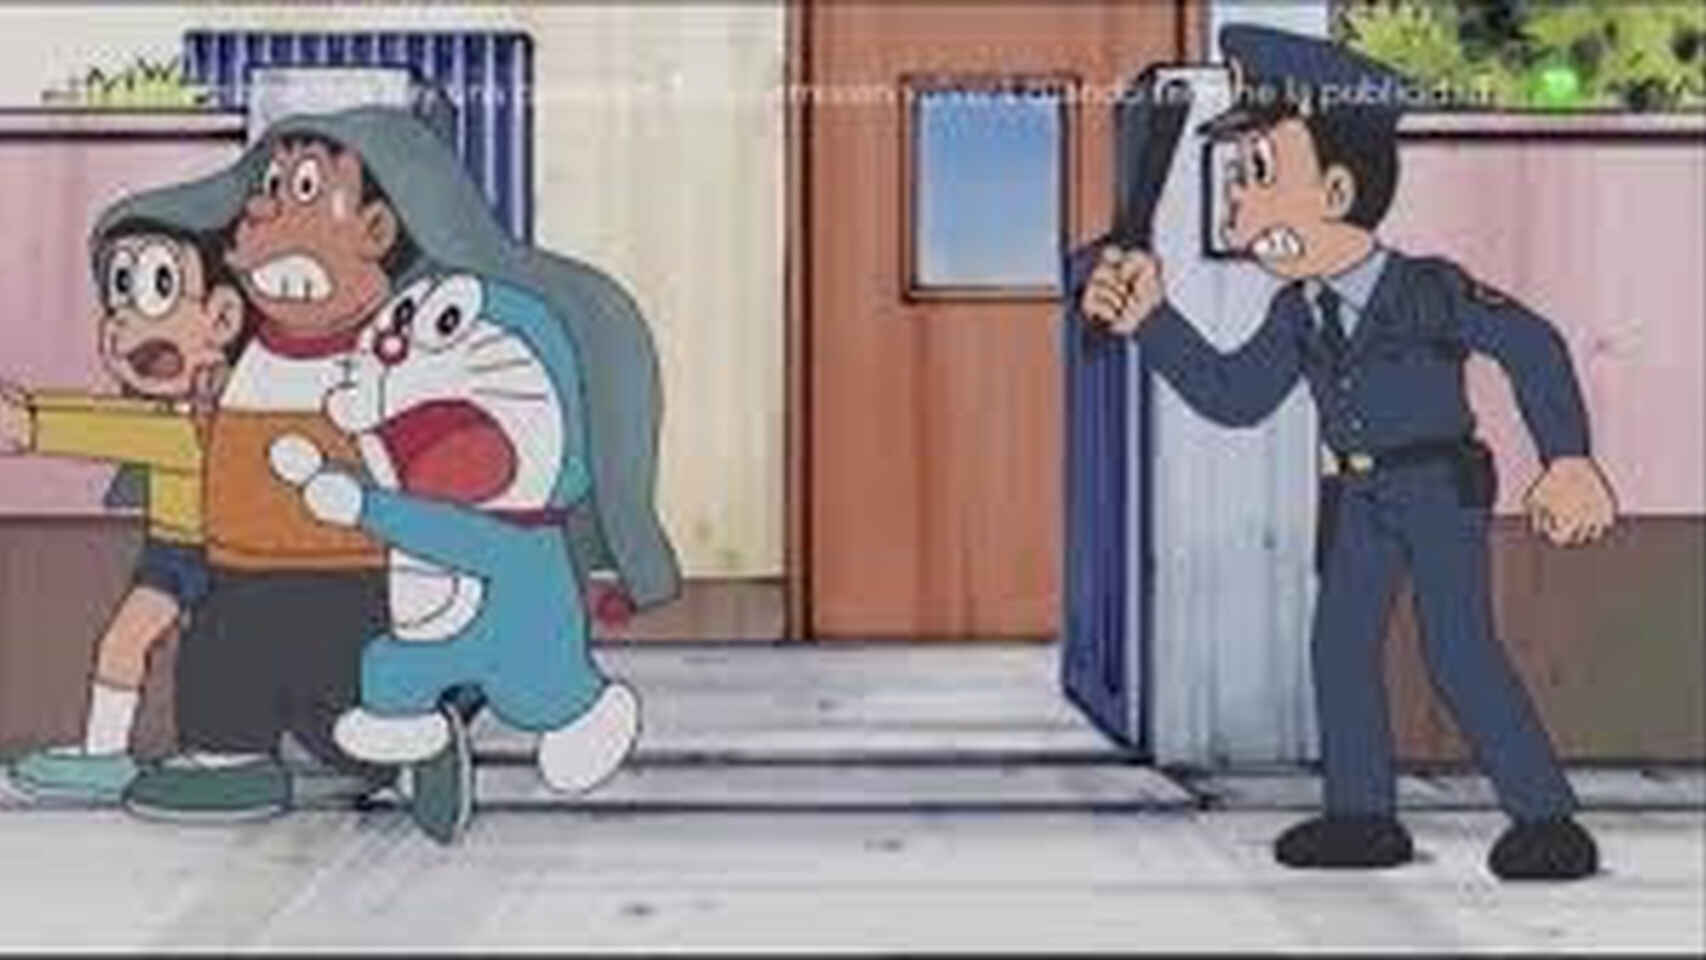 Un policia intenta detener a Doraemon y Nobita, en alusión a Bartomeu.